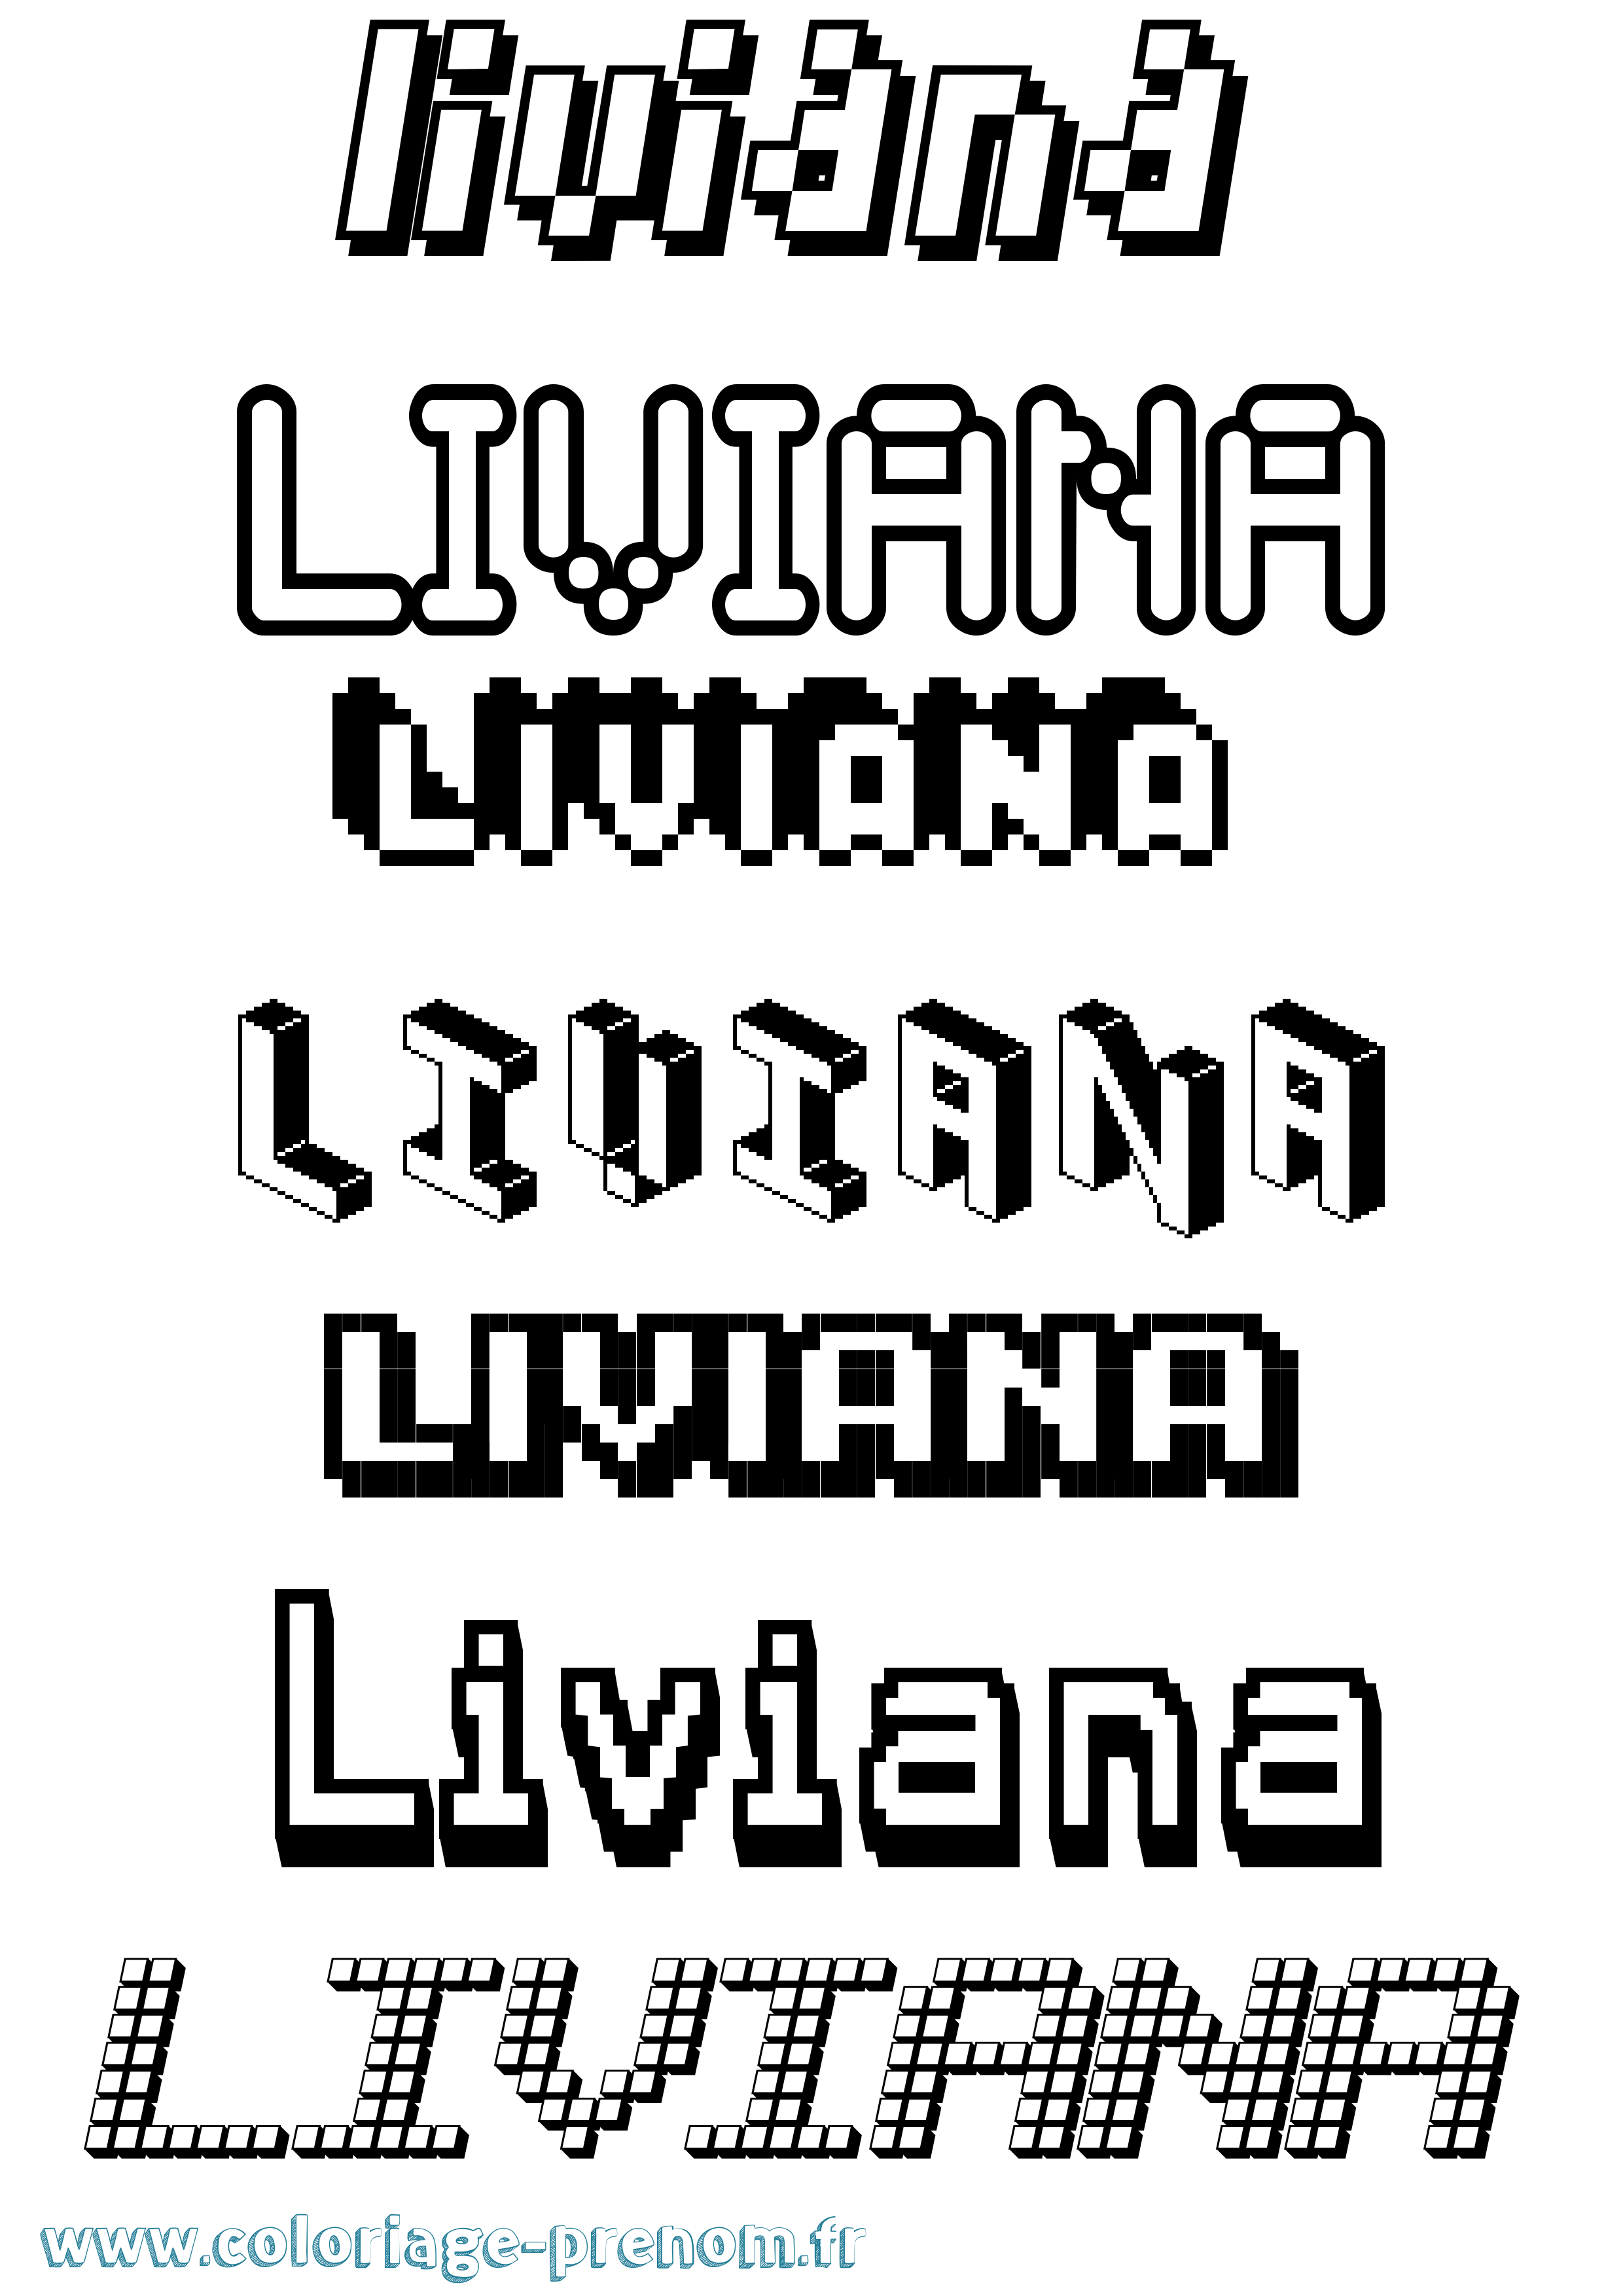 Coloriage prénom Liviana Pixel